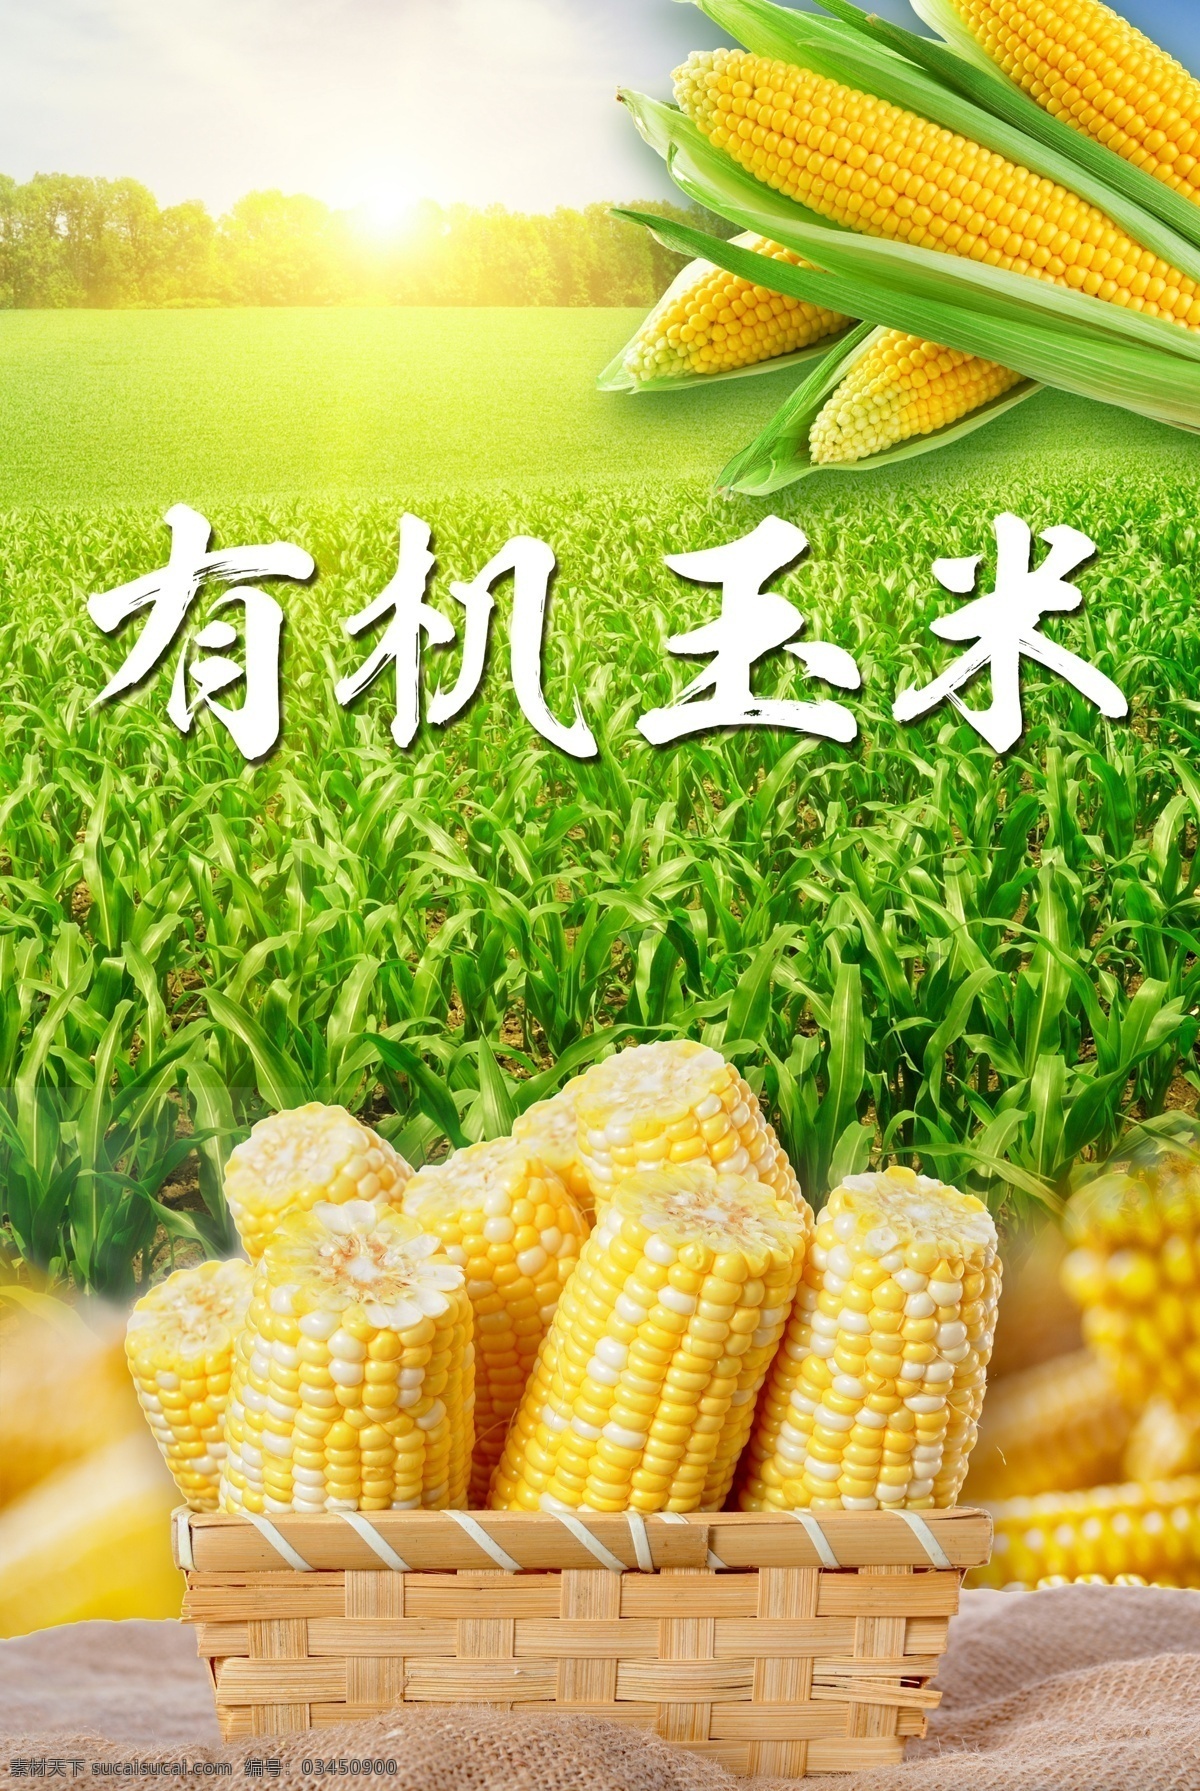 有机玉米 有机 食品 玉米 农作物 苞米 美食 农家 农民 阳光 绿色 田野 设计文件